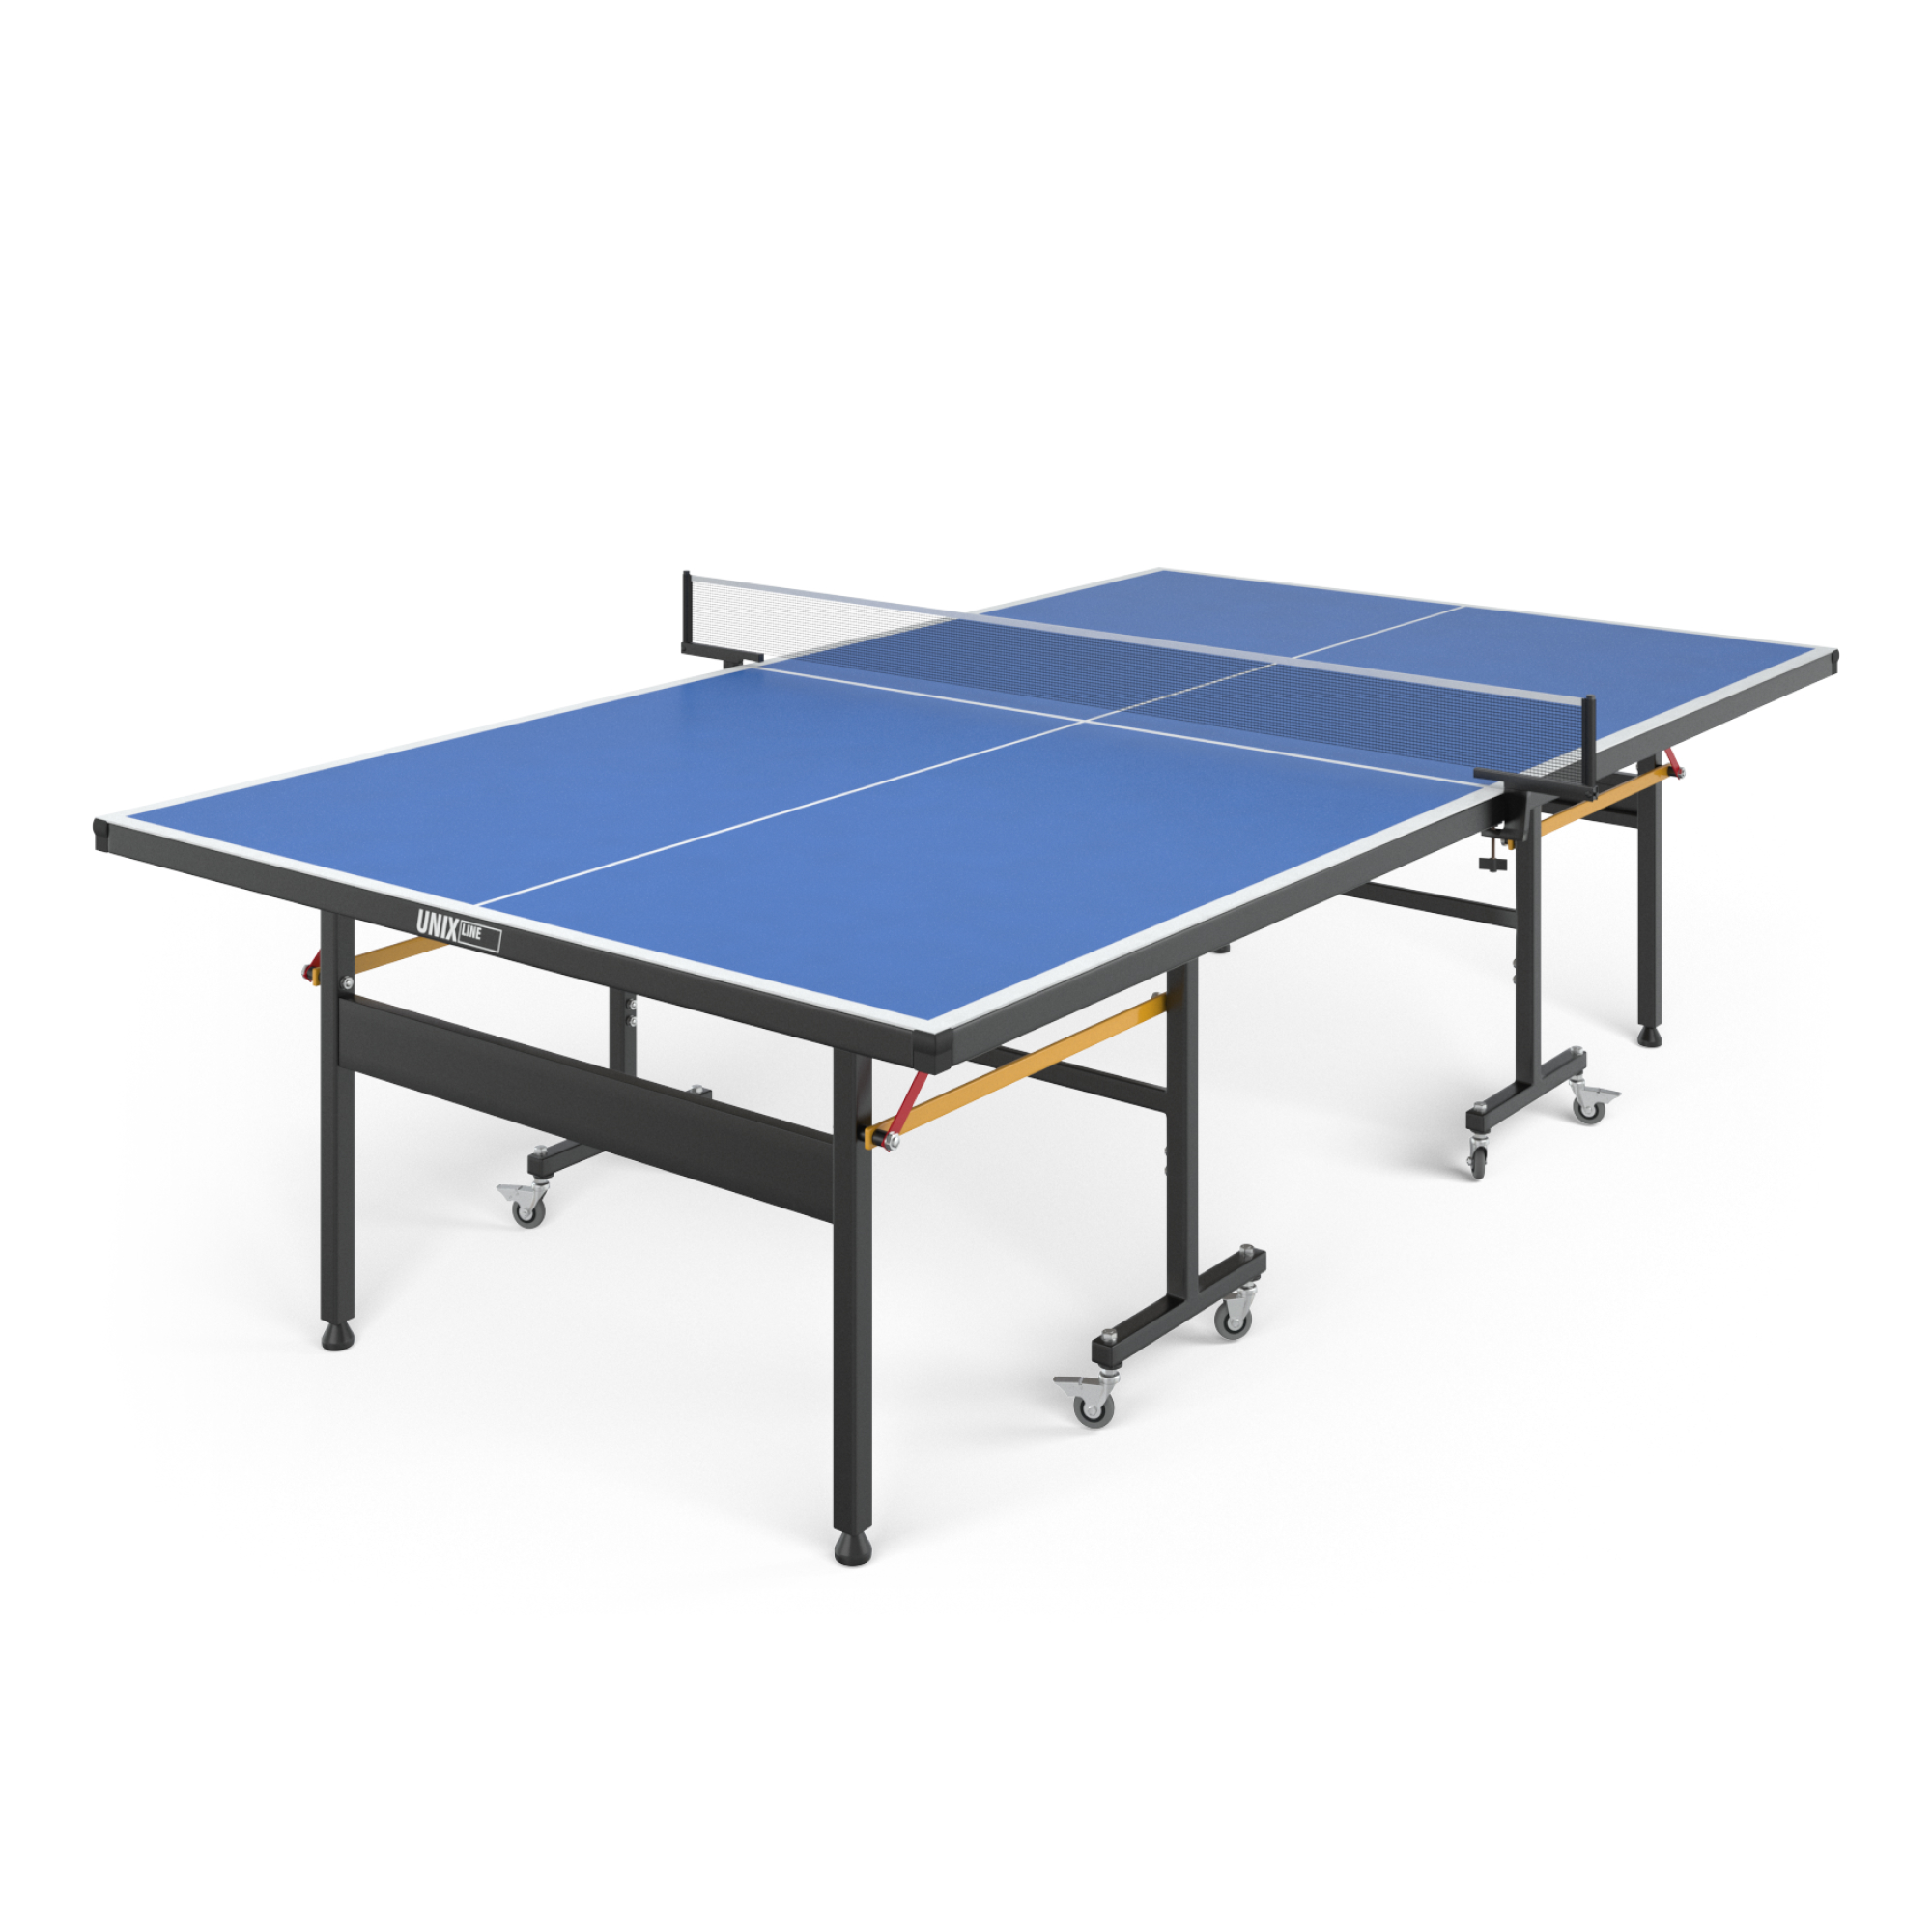 Теннисный стол UNIX line outdoor 14 mm SMC (Blue)